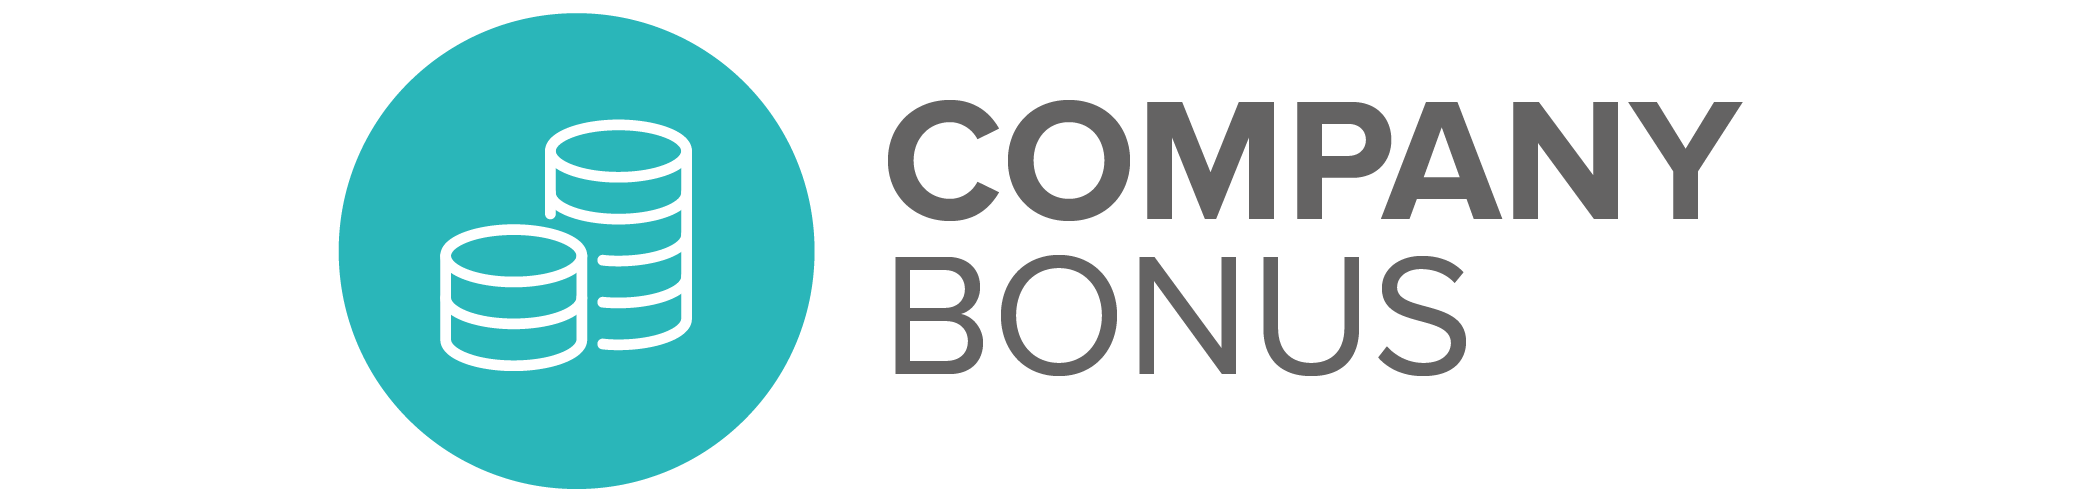 Company Bonus Benefit Icon